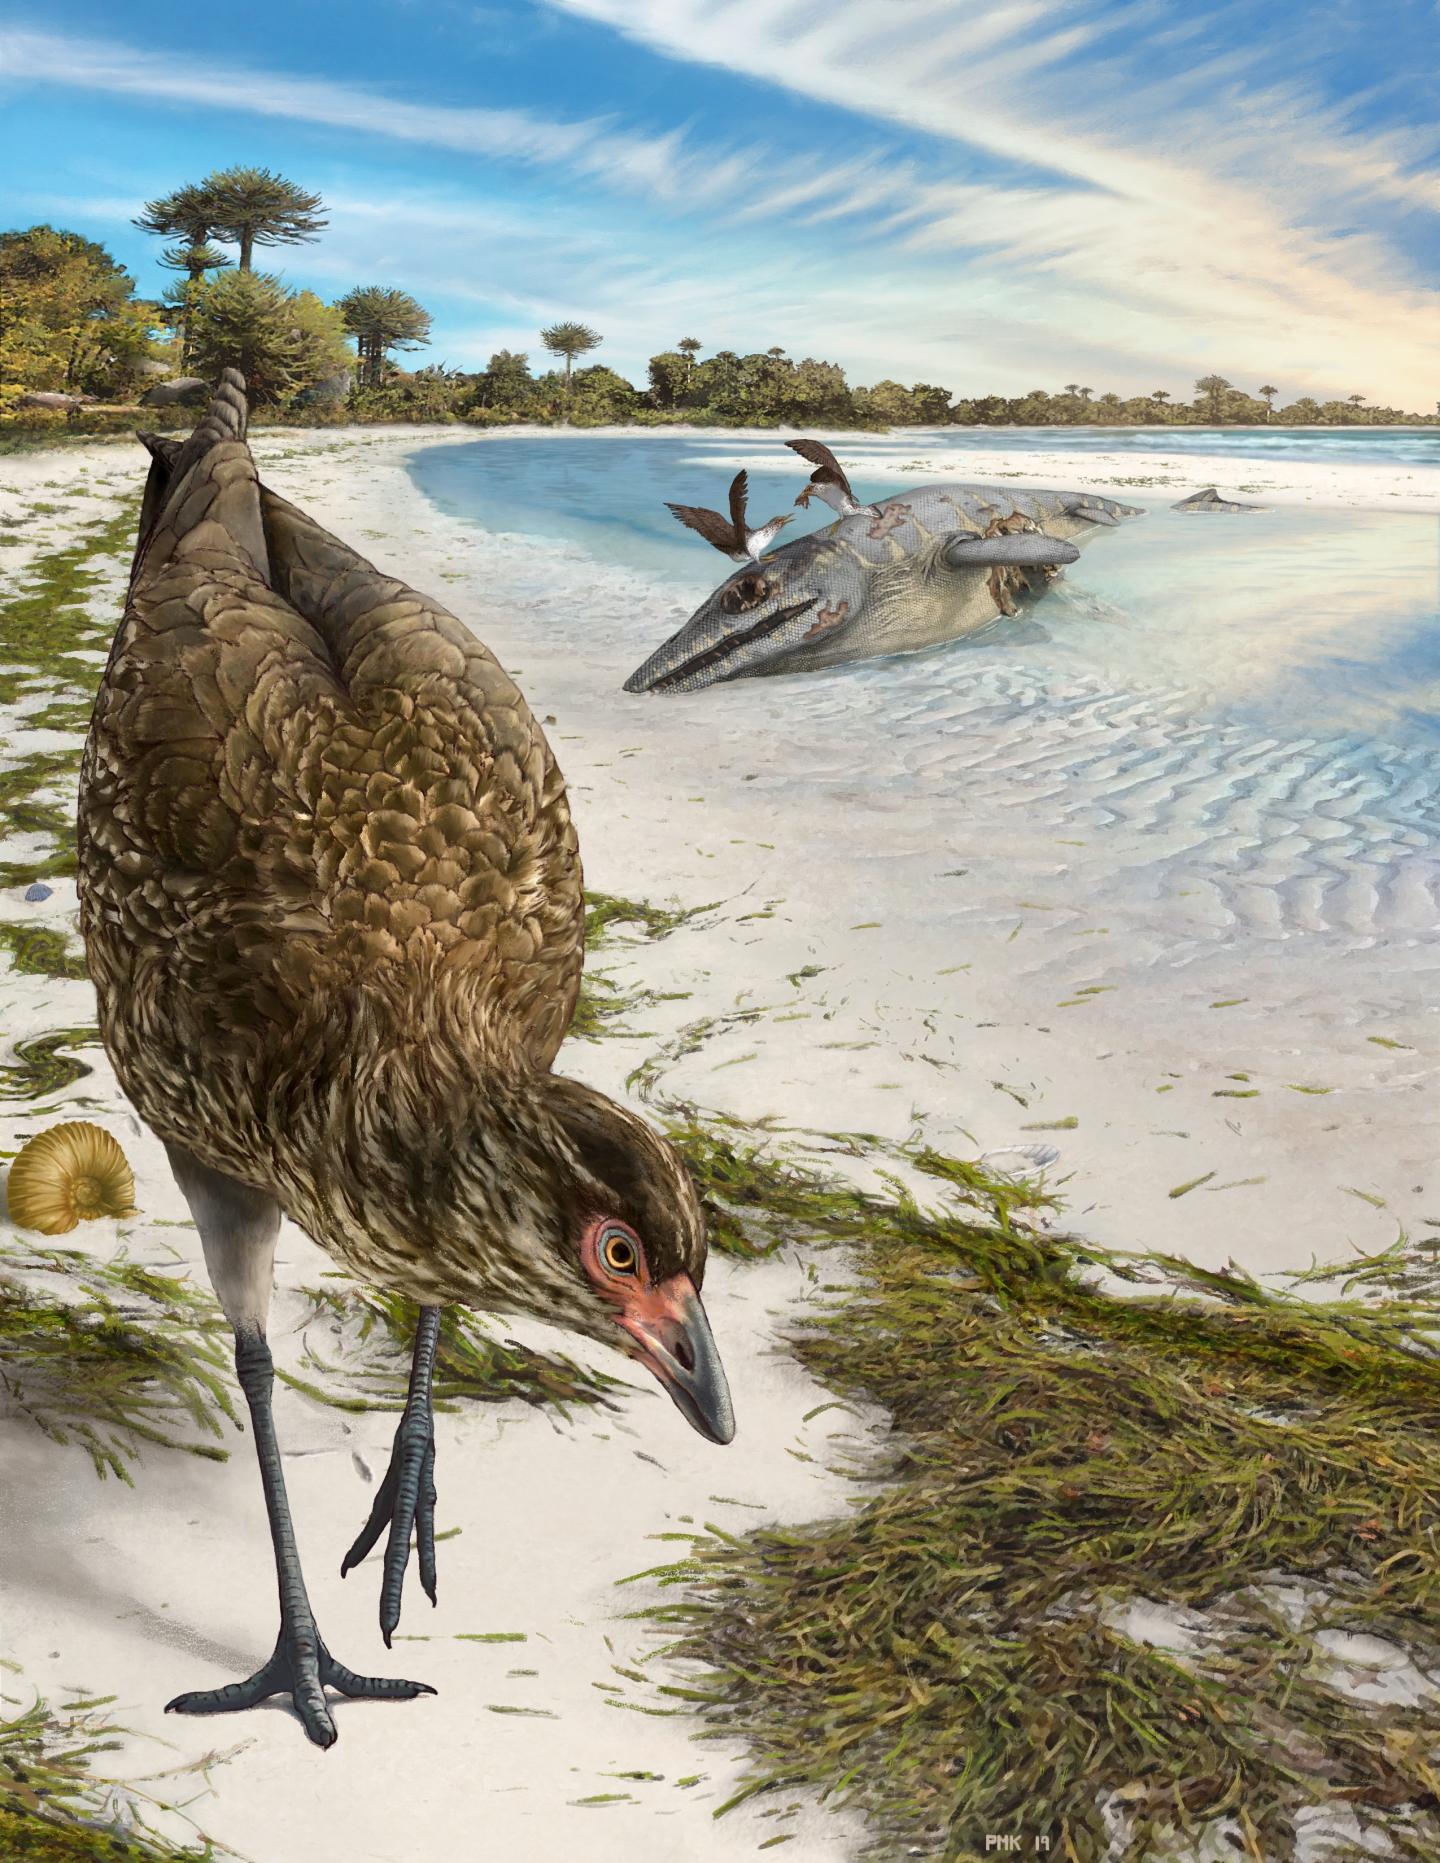 Wonderchicken: Oldest bird fossil discovered